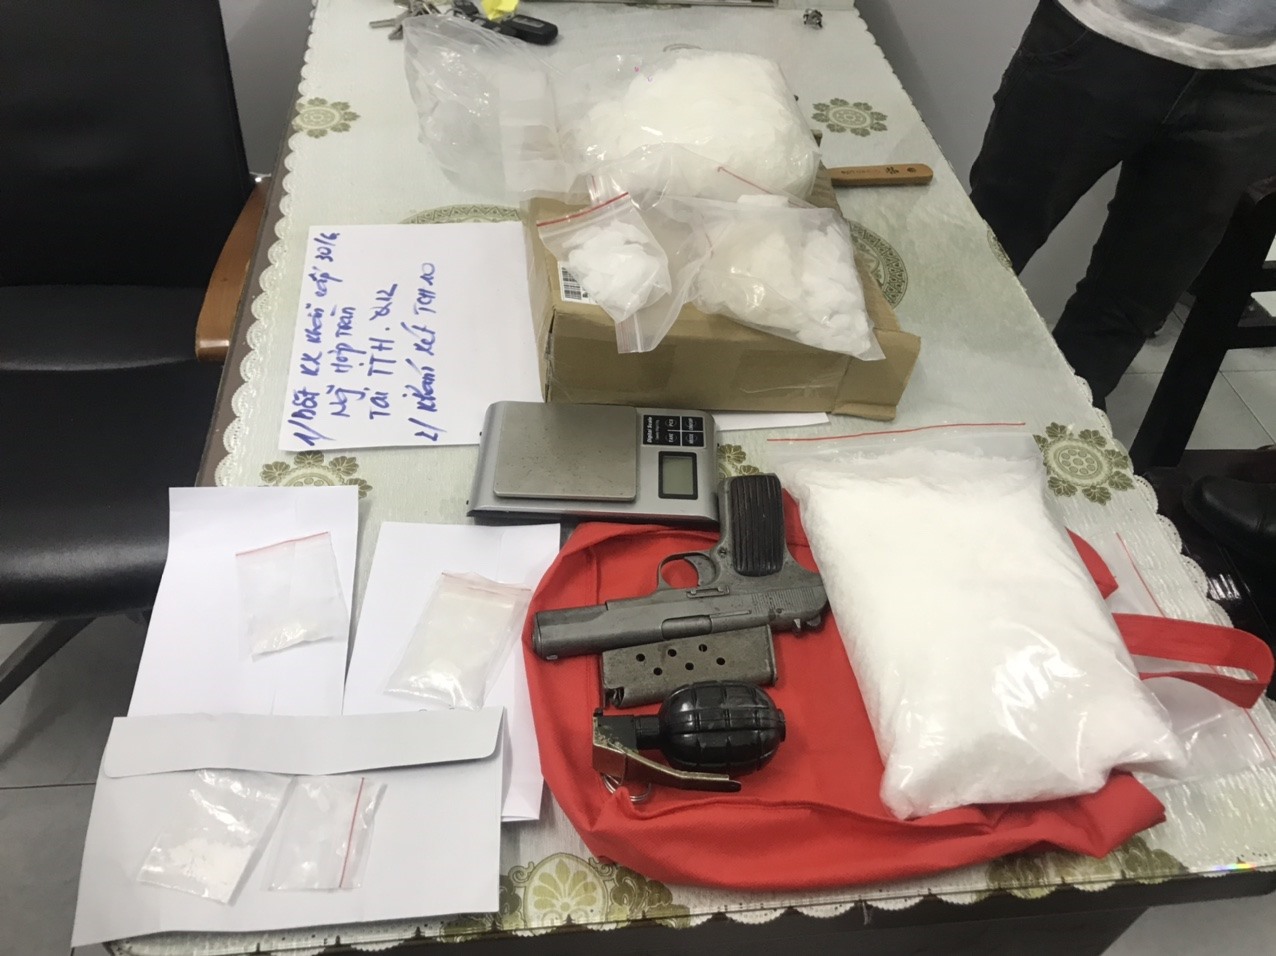 Ma túy cùng súng, lựu đạn cảnh sát thu giữ của ông trùm Nguyễn Hợp Toàn. Ảnh cơ quan công an.